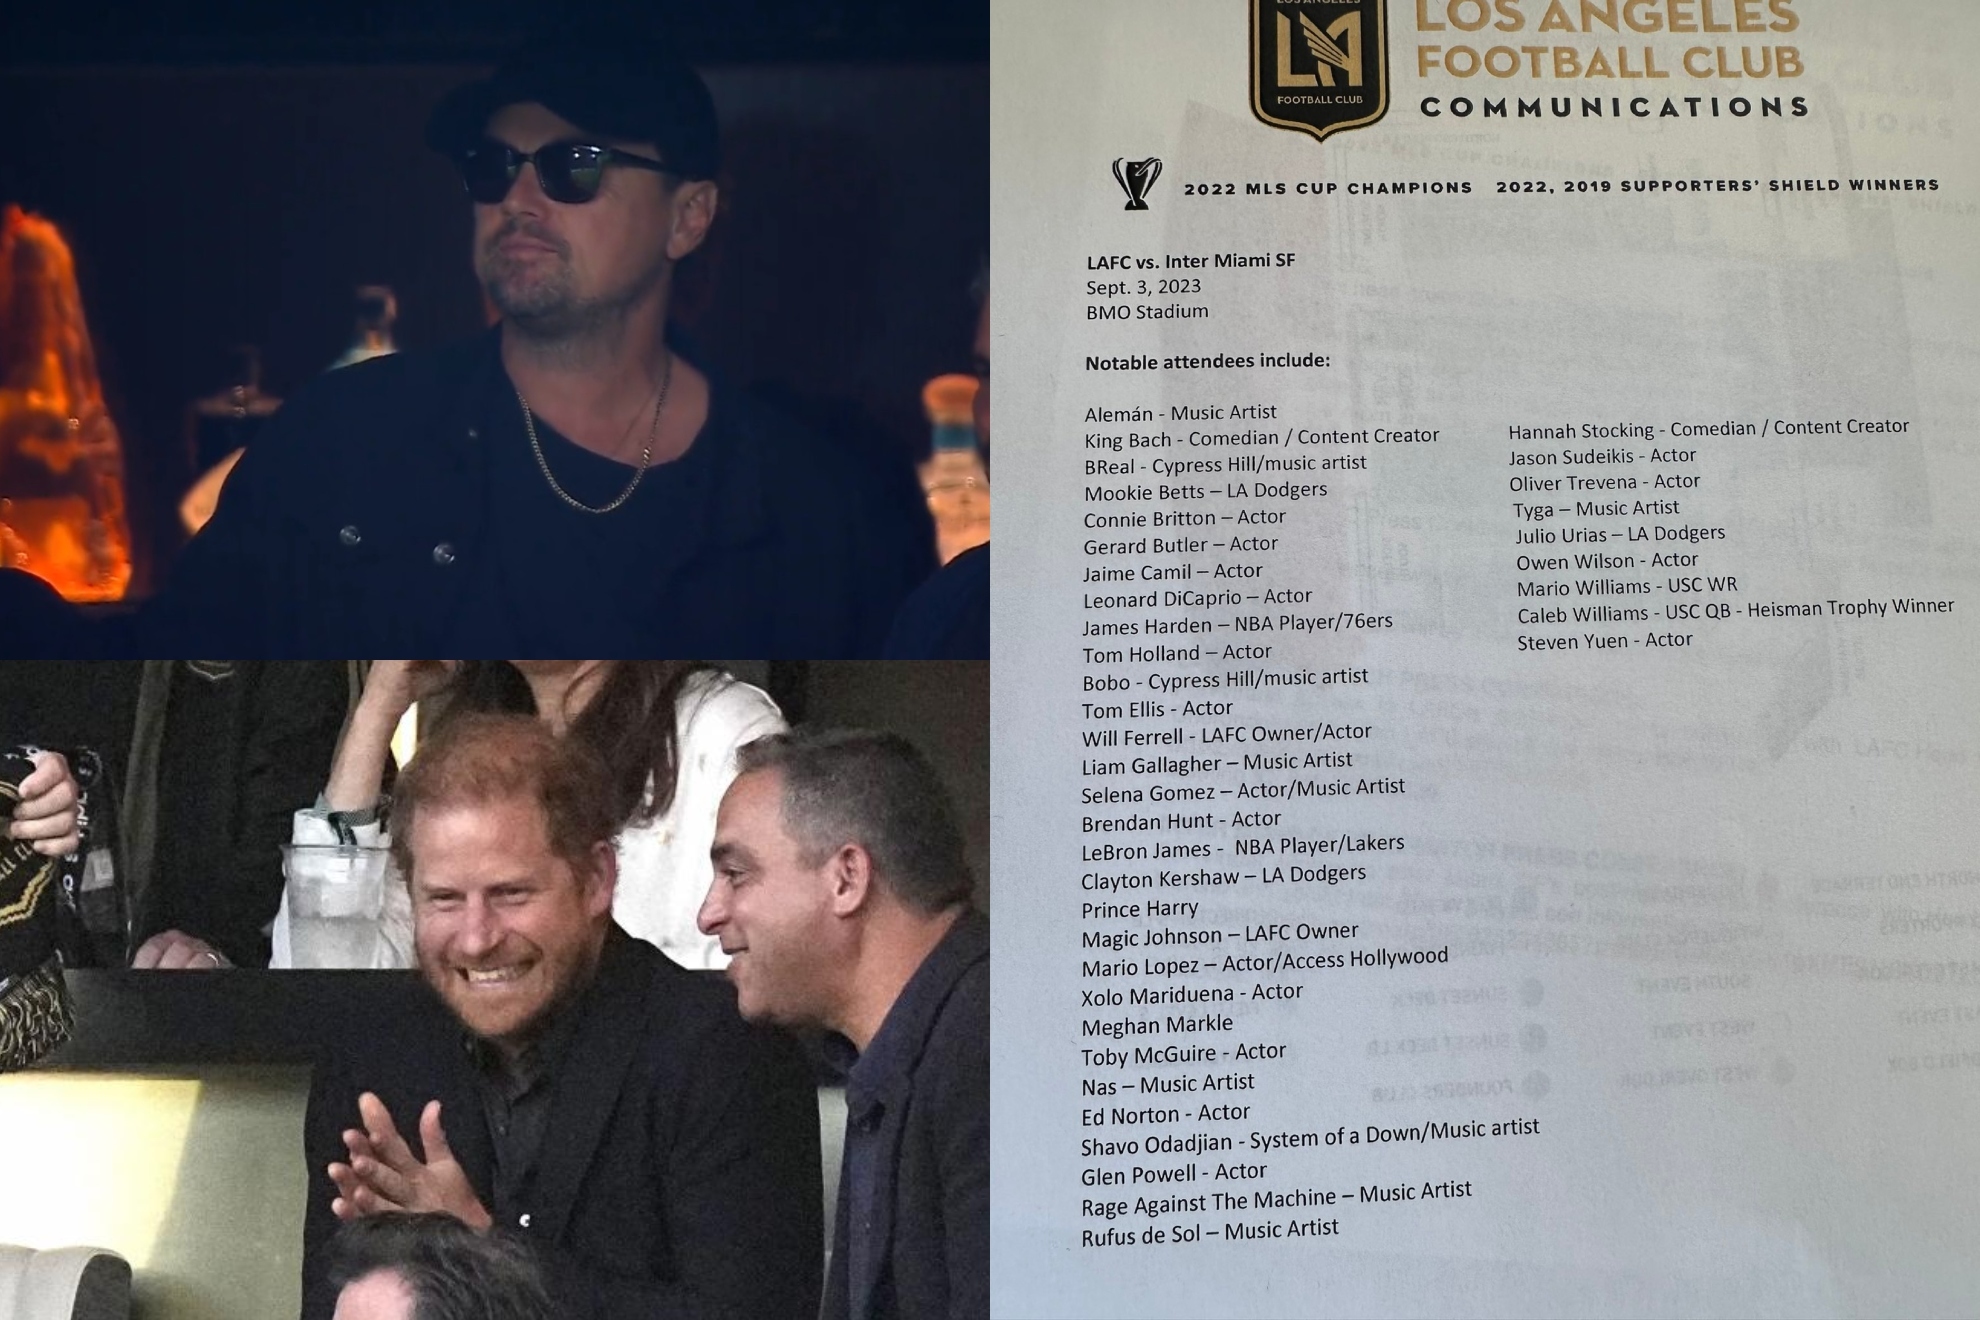 La impresionante lista de 'celebrities' que fueron a ver a Messi en Los �ngeles: DiCaprio, LeBron, el Pr�ncipe Harry...